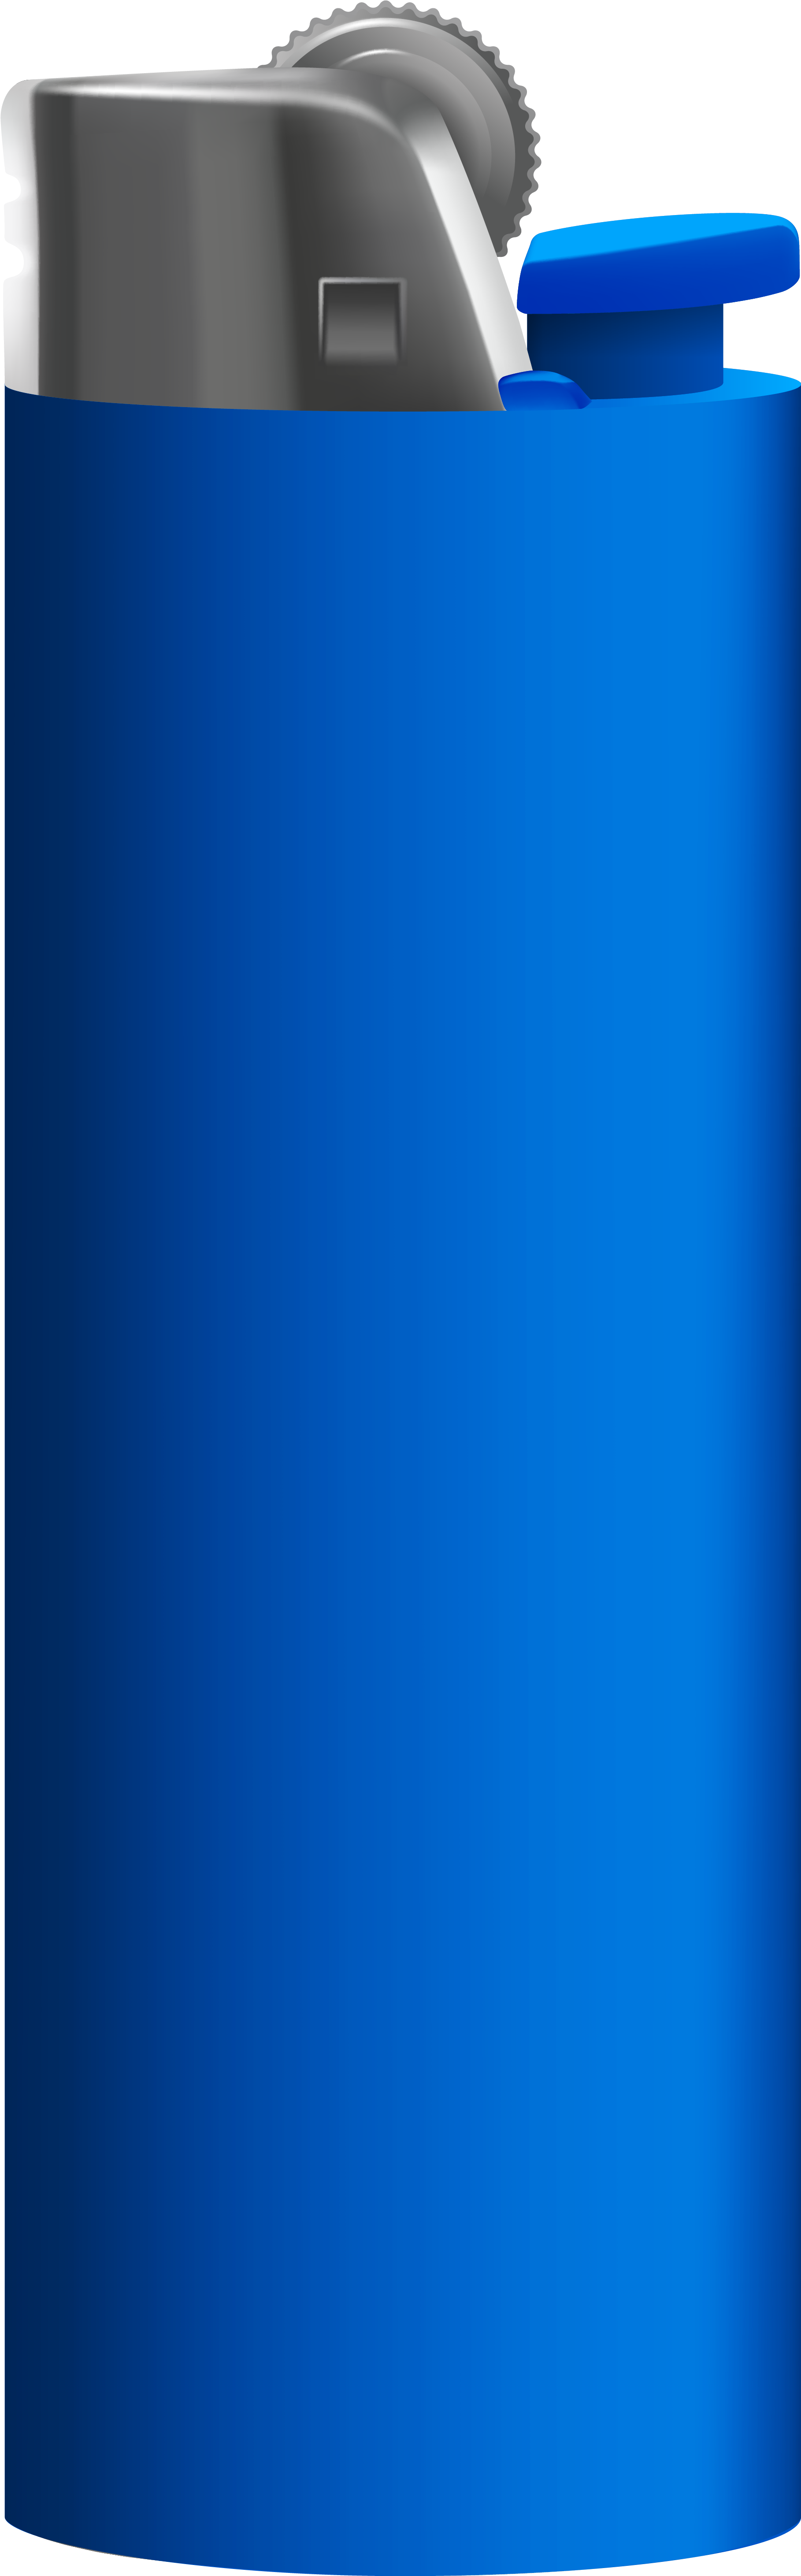 Lighter - Blue Lighter Png (2005x5965)